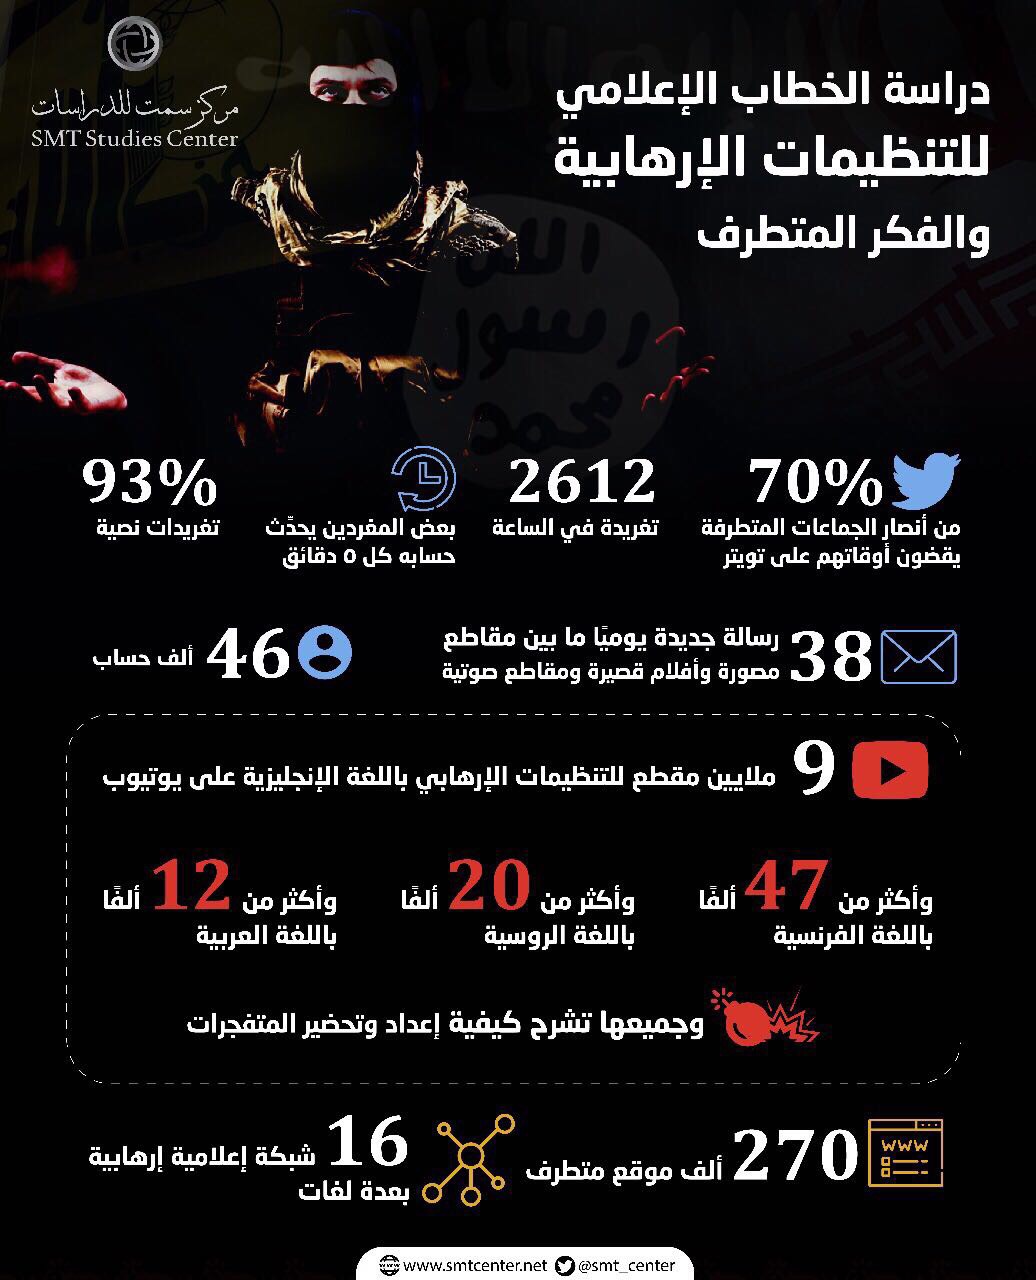 إنفوجراف.. 2612 ألف تغريدة إرهابية في الساعة و150 ألف موقع في خدمة المتطرفين